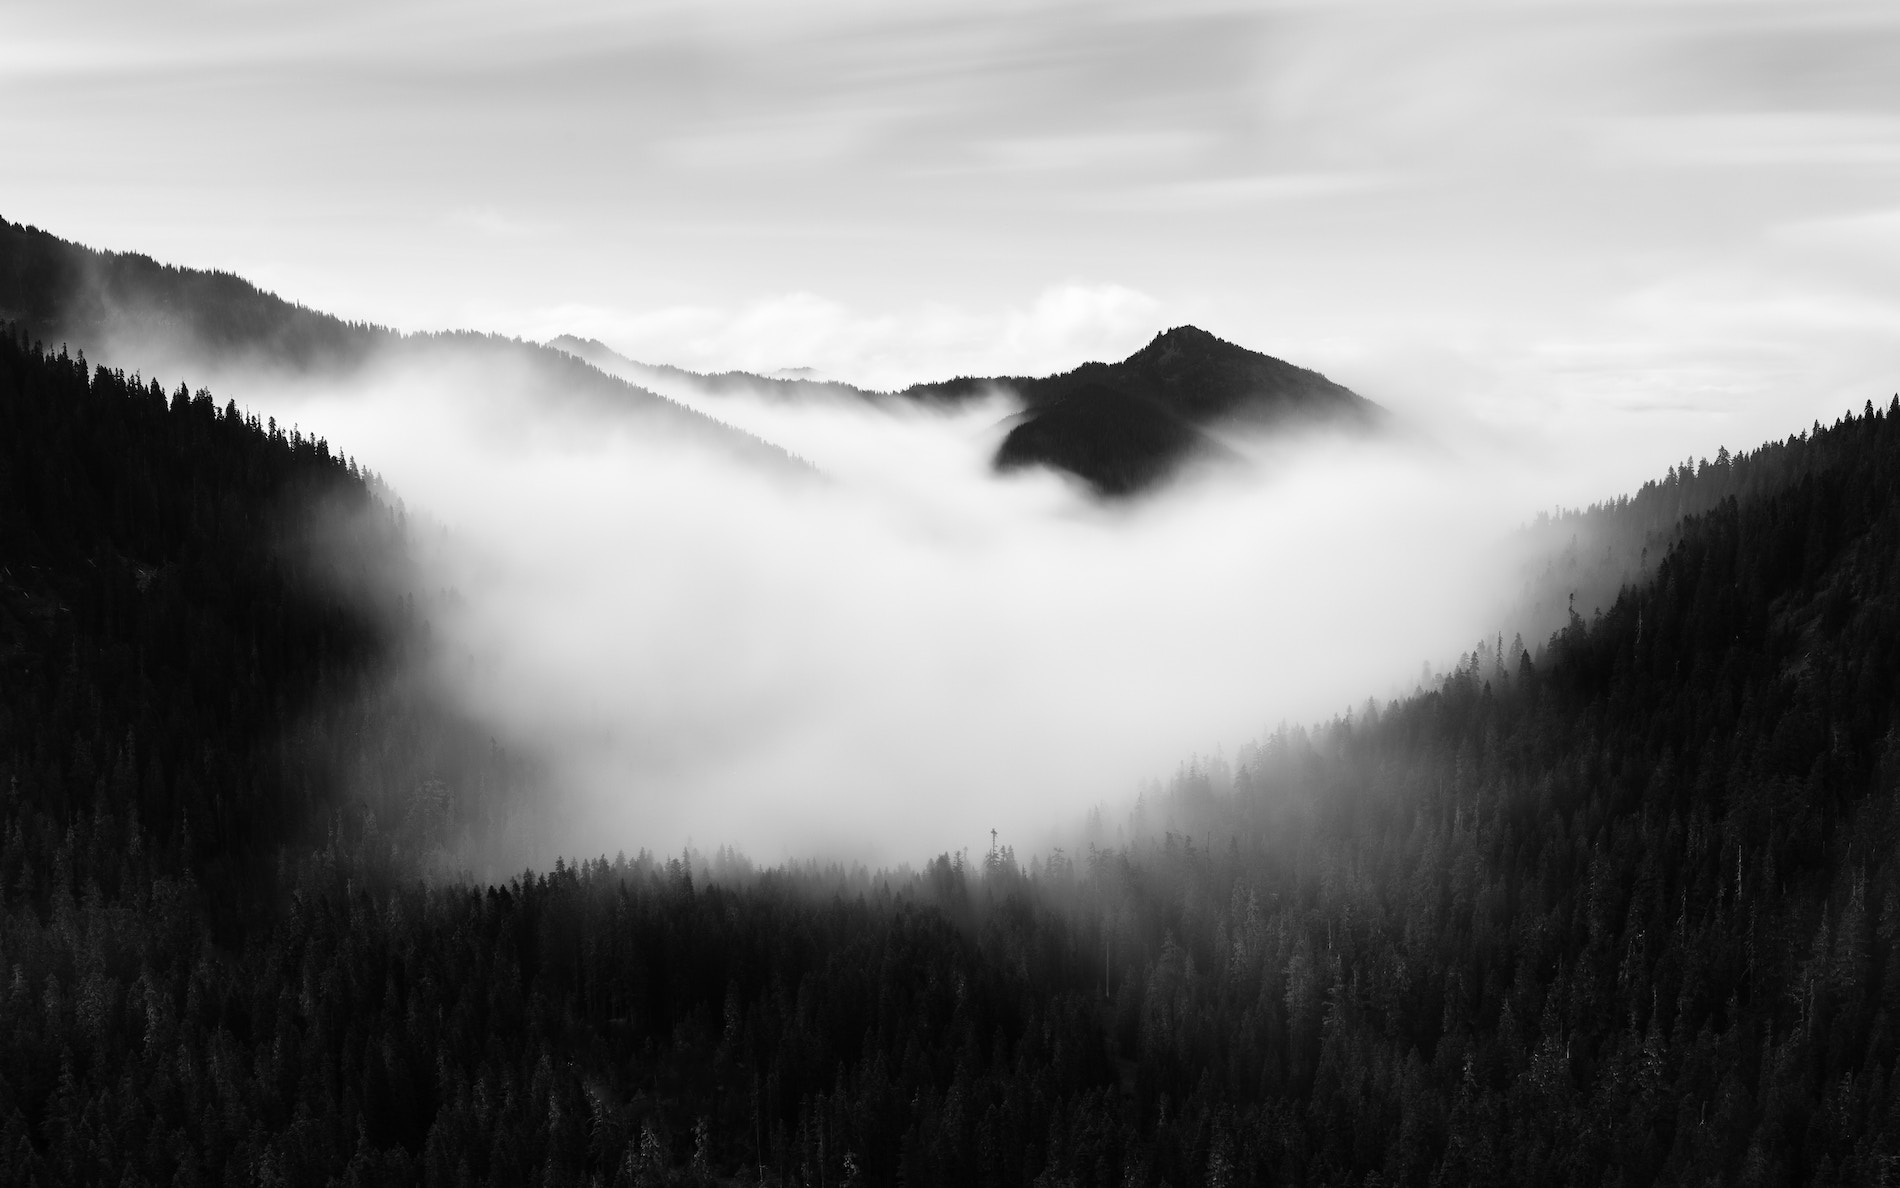 A misty mountain